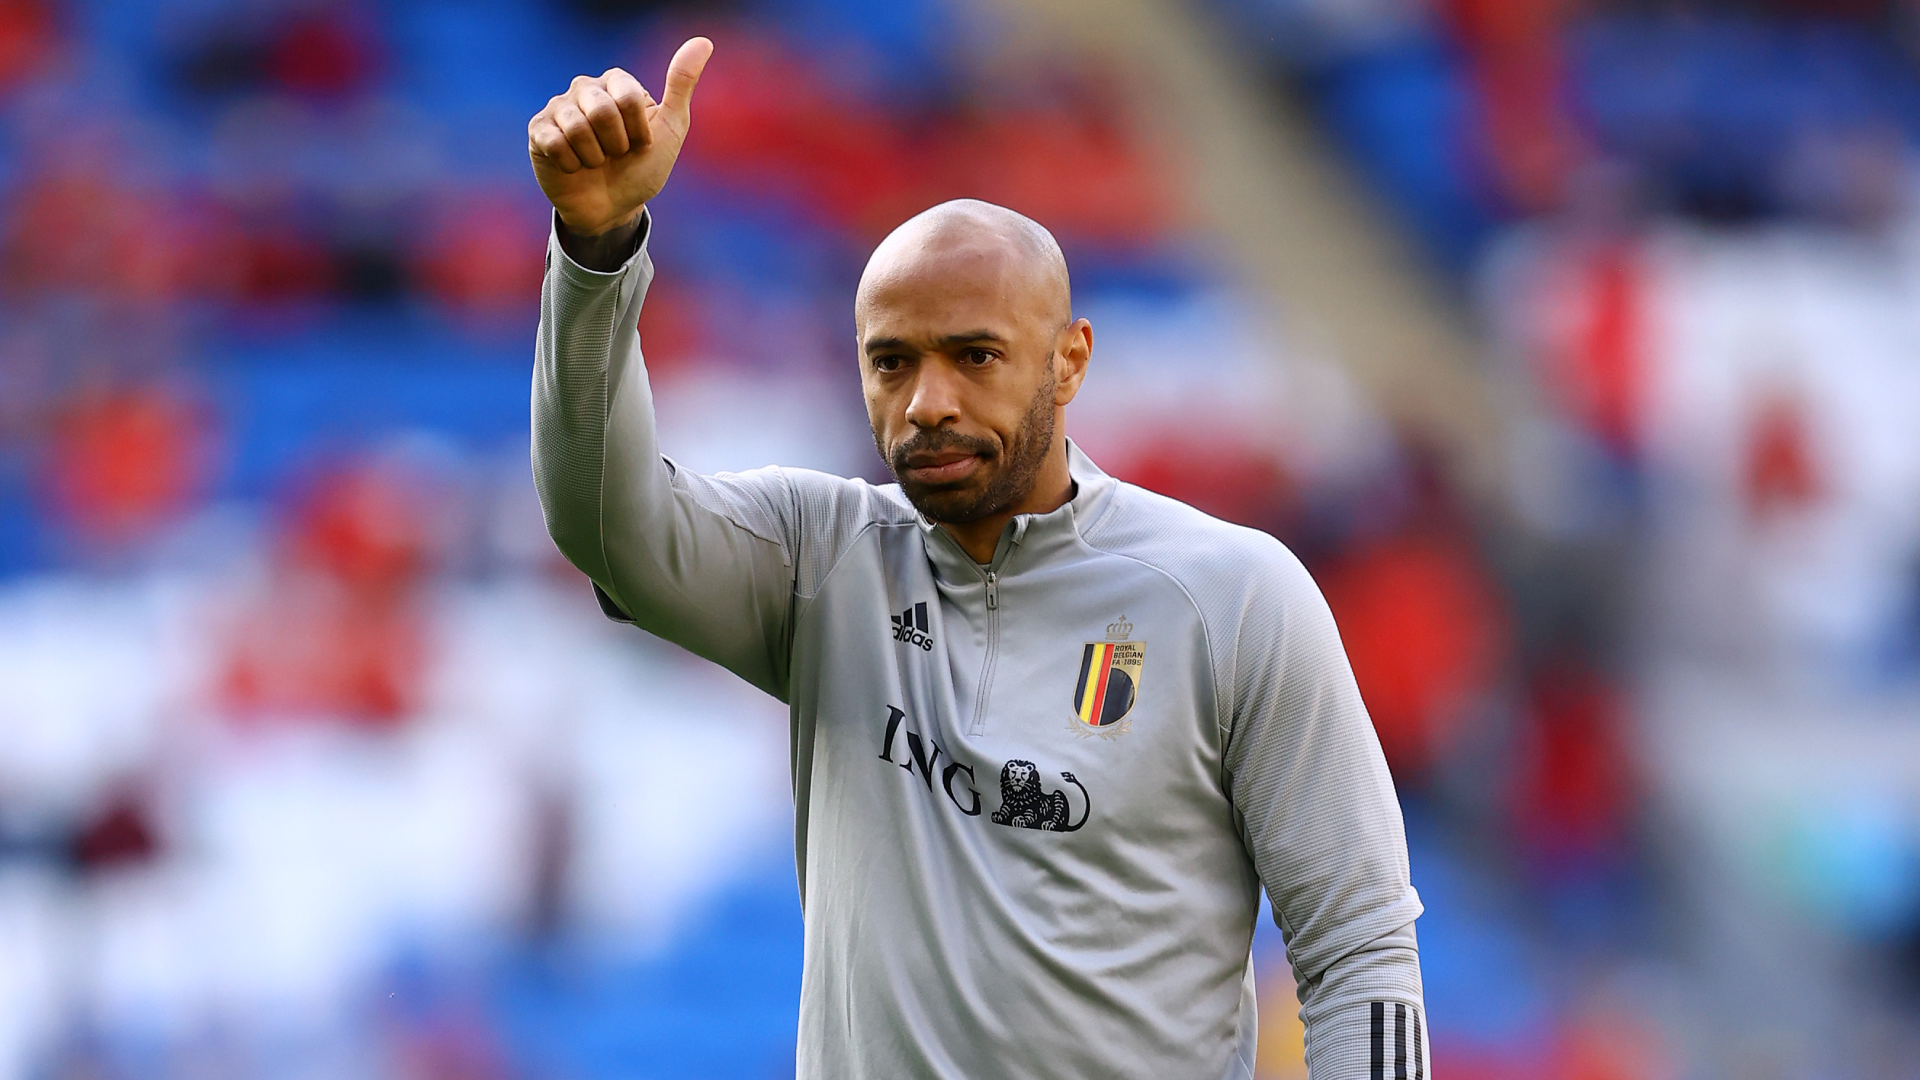 Ce n'est pas évident», Thierry Henry se confie sur les difficultés du métier du coach | Goal.com Français